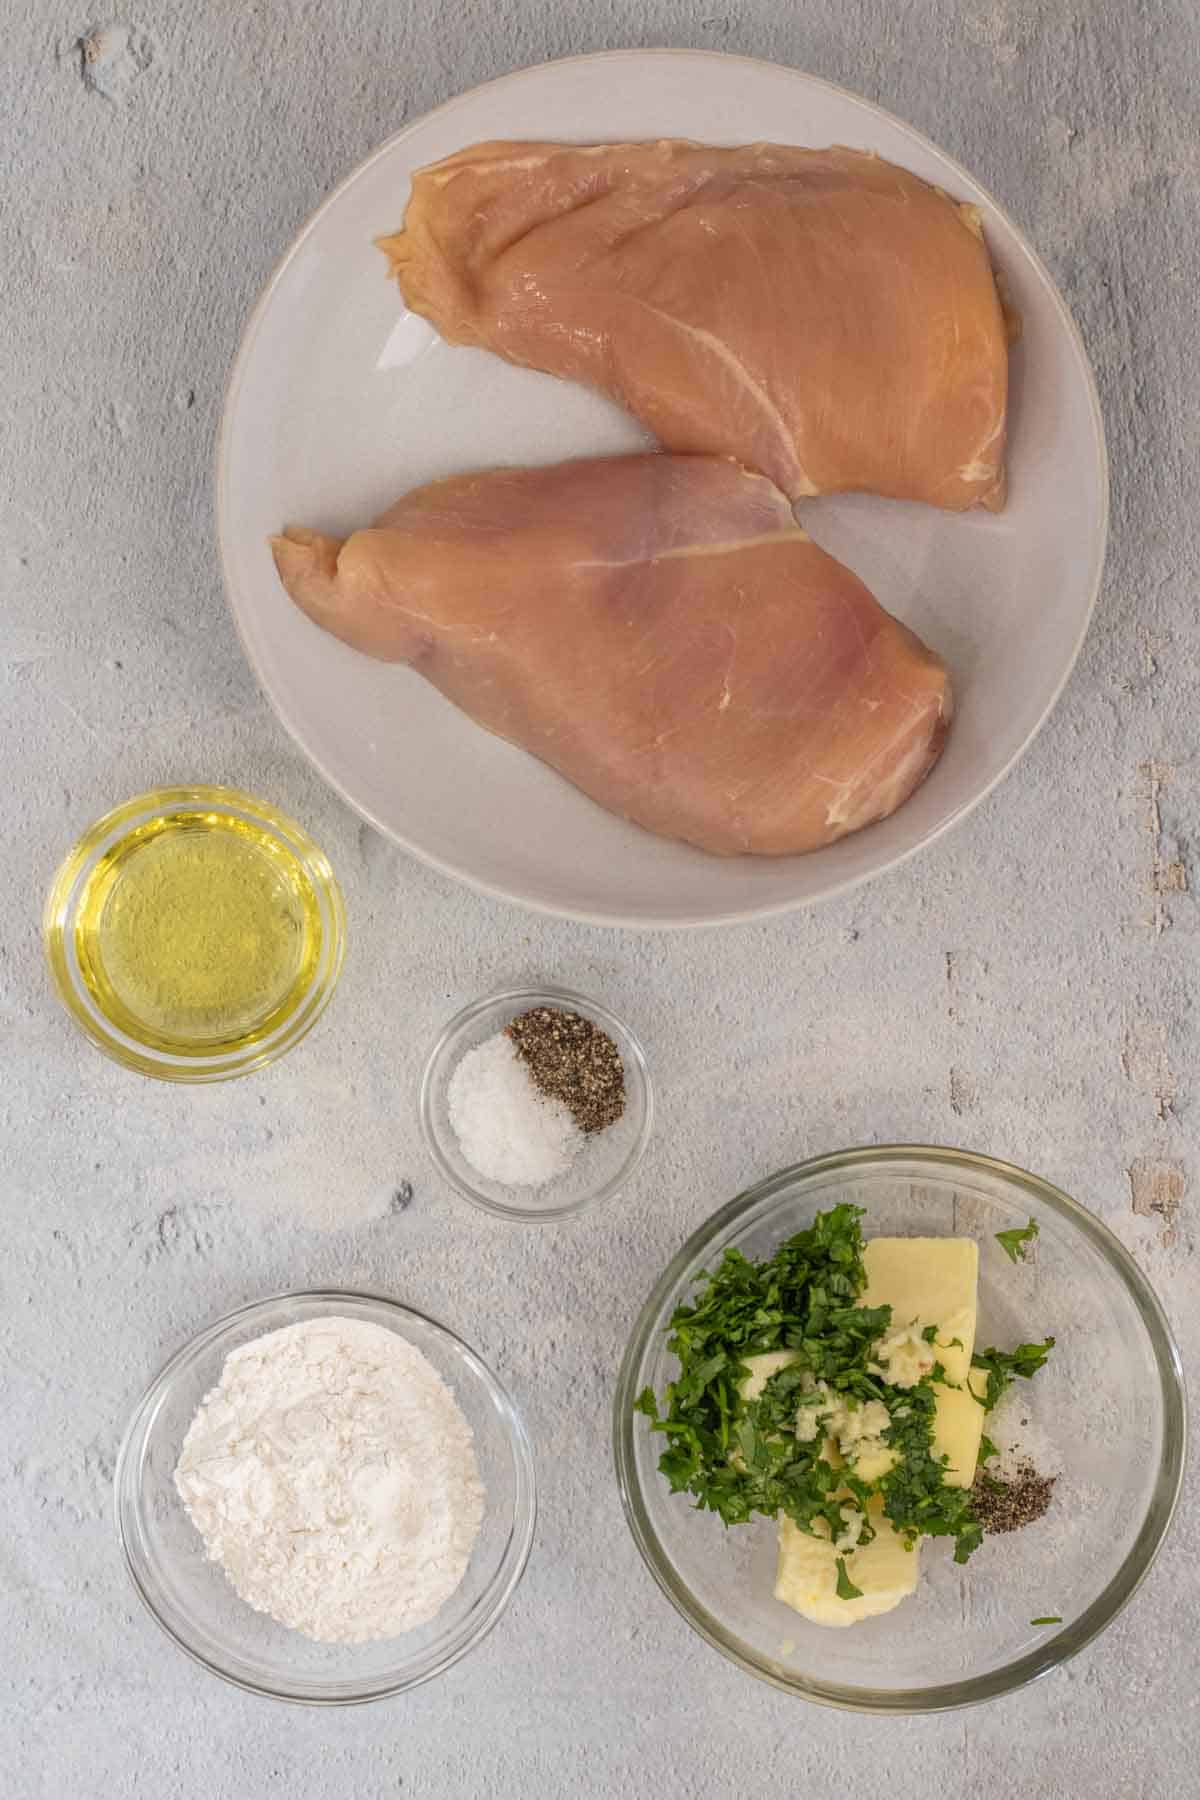 All ingredient needed to make garlic butter chicken recipe.